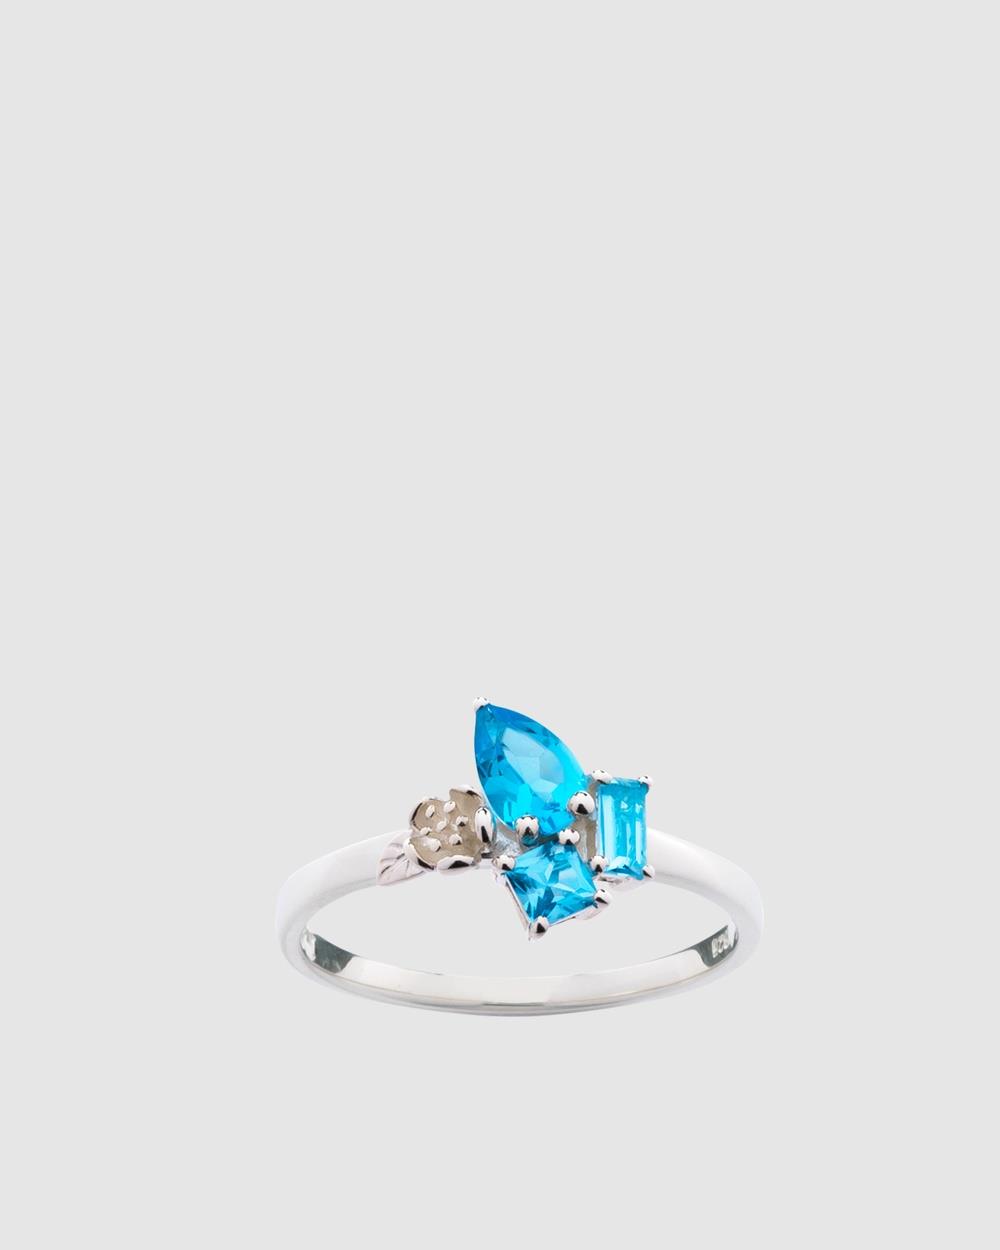 Karen Walker - Rock Garden Mini Ring with Topaz - Jewellery (Sterling Silver) Rock Garden Mini Ring with Topaz